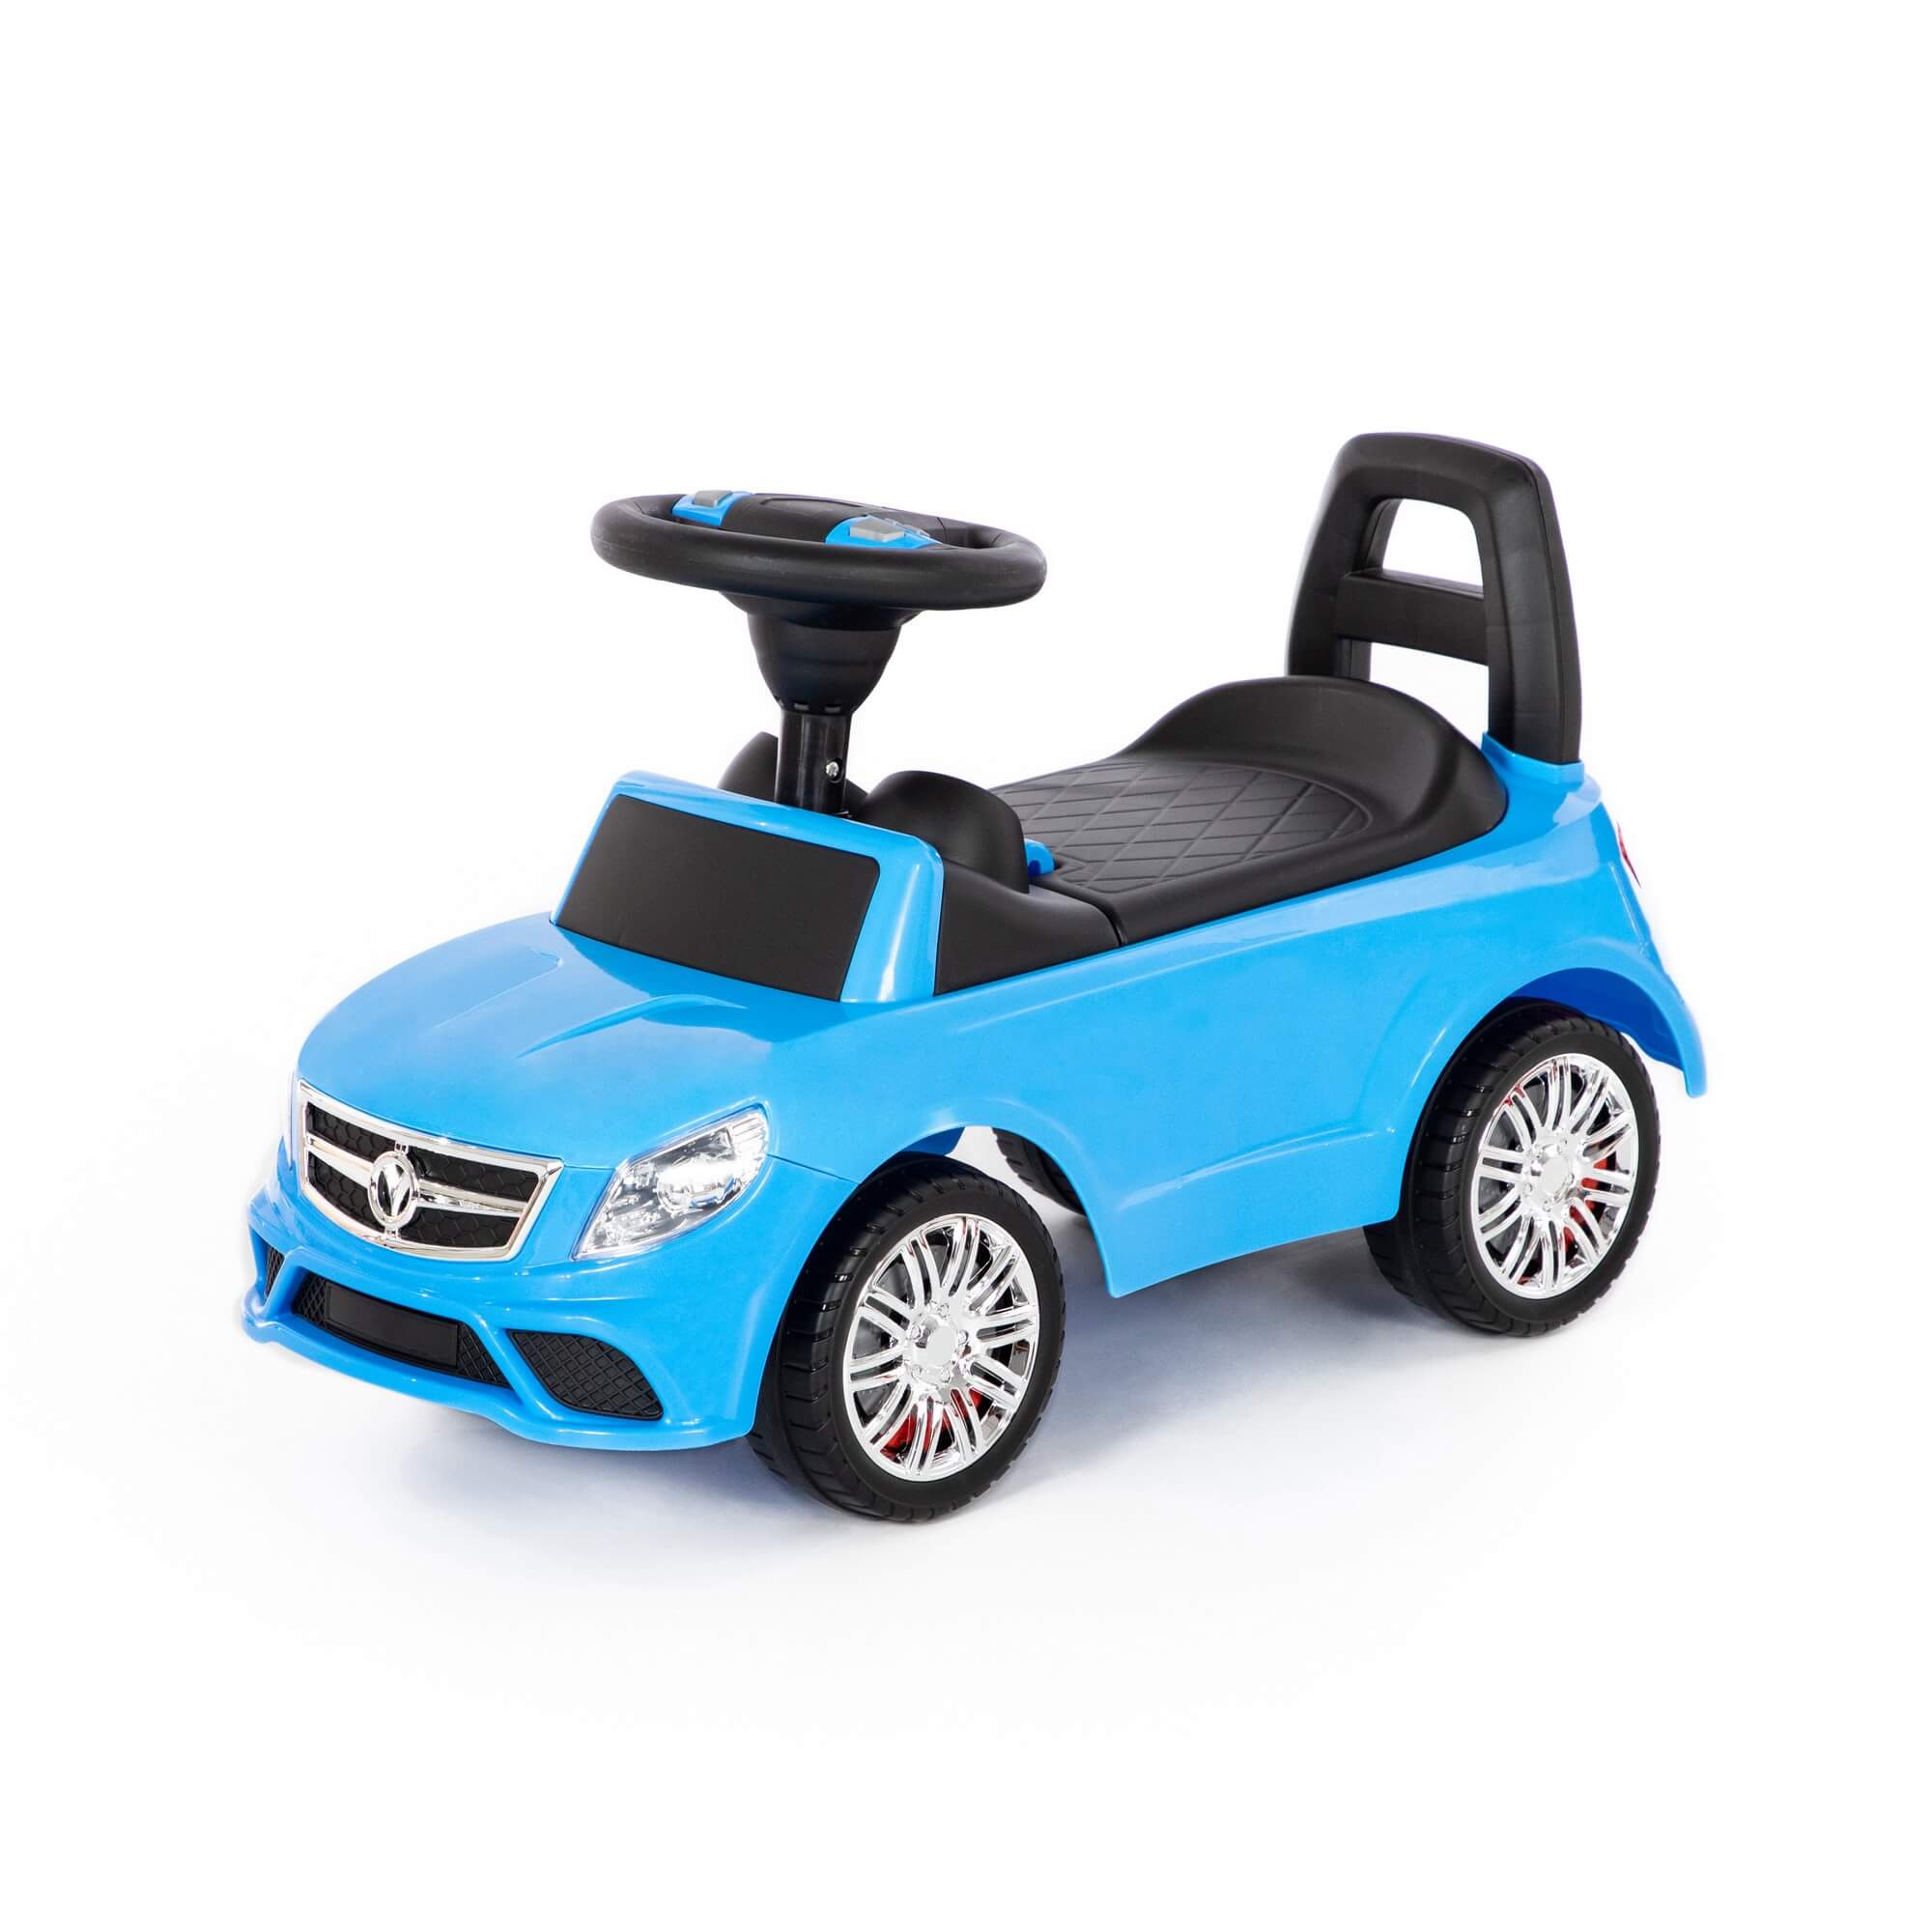 Каталка-автомобиль SuperCar №3 со звуковым сигналом, цвет голубой Полесье 84484 каталка полесье автомобиль supercar 2 со звуковым сигналом